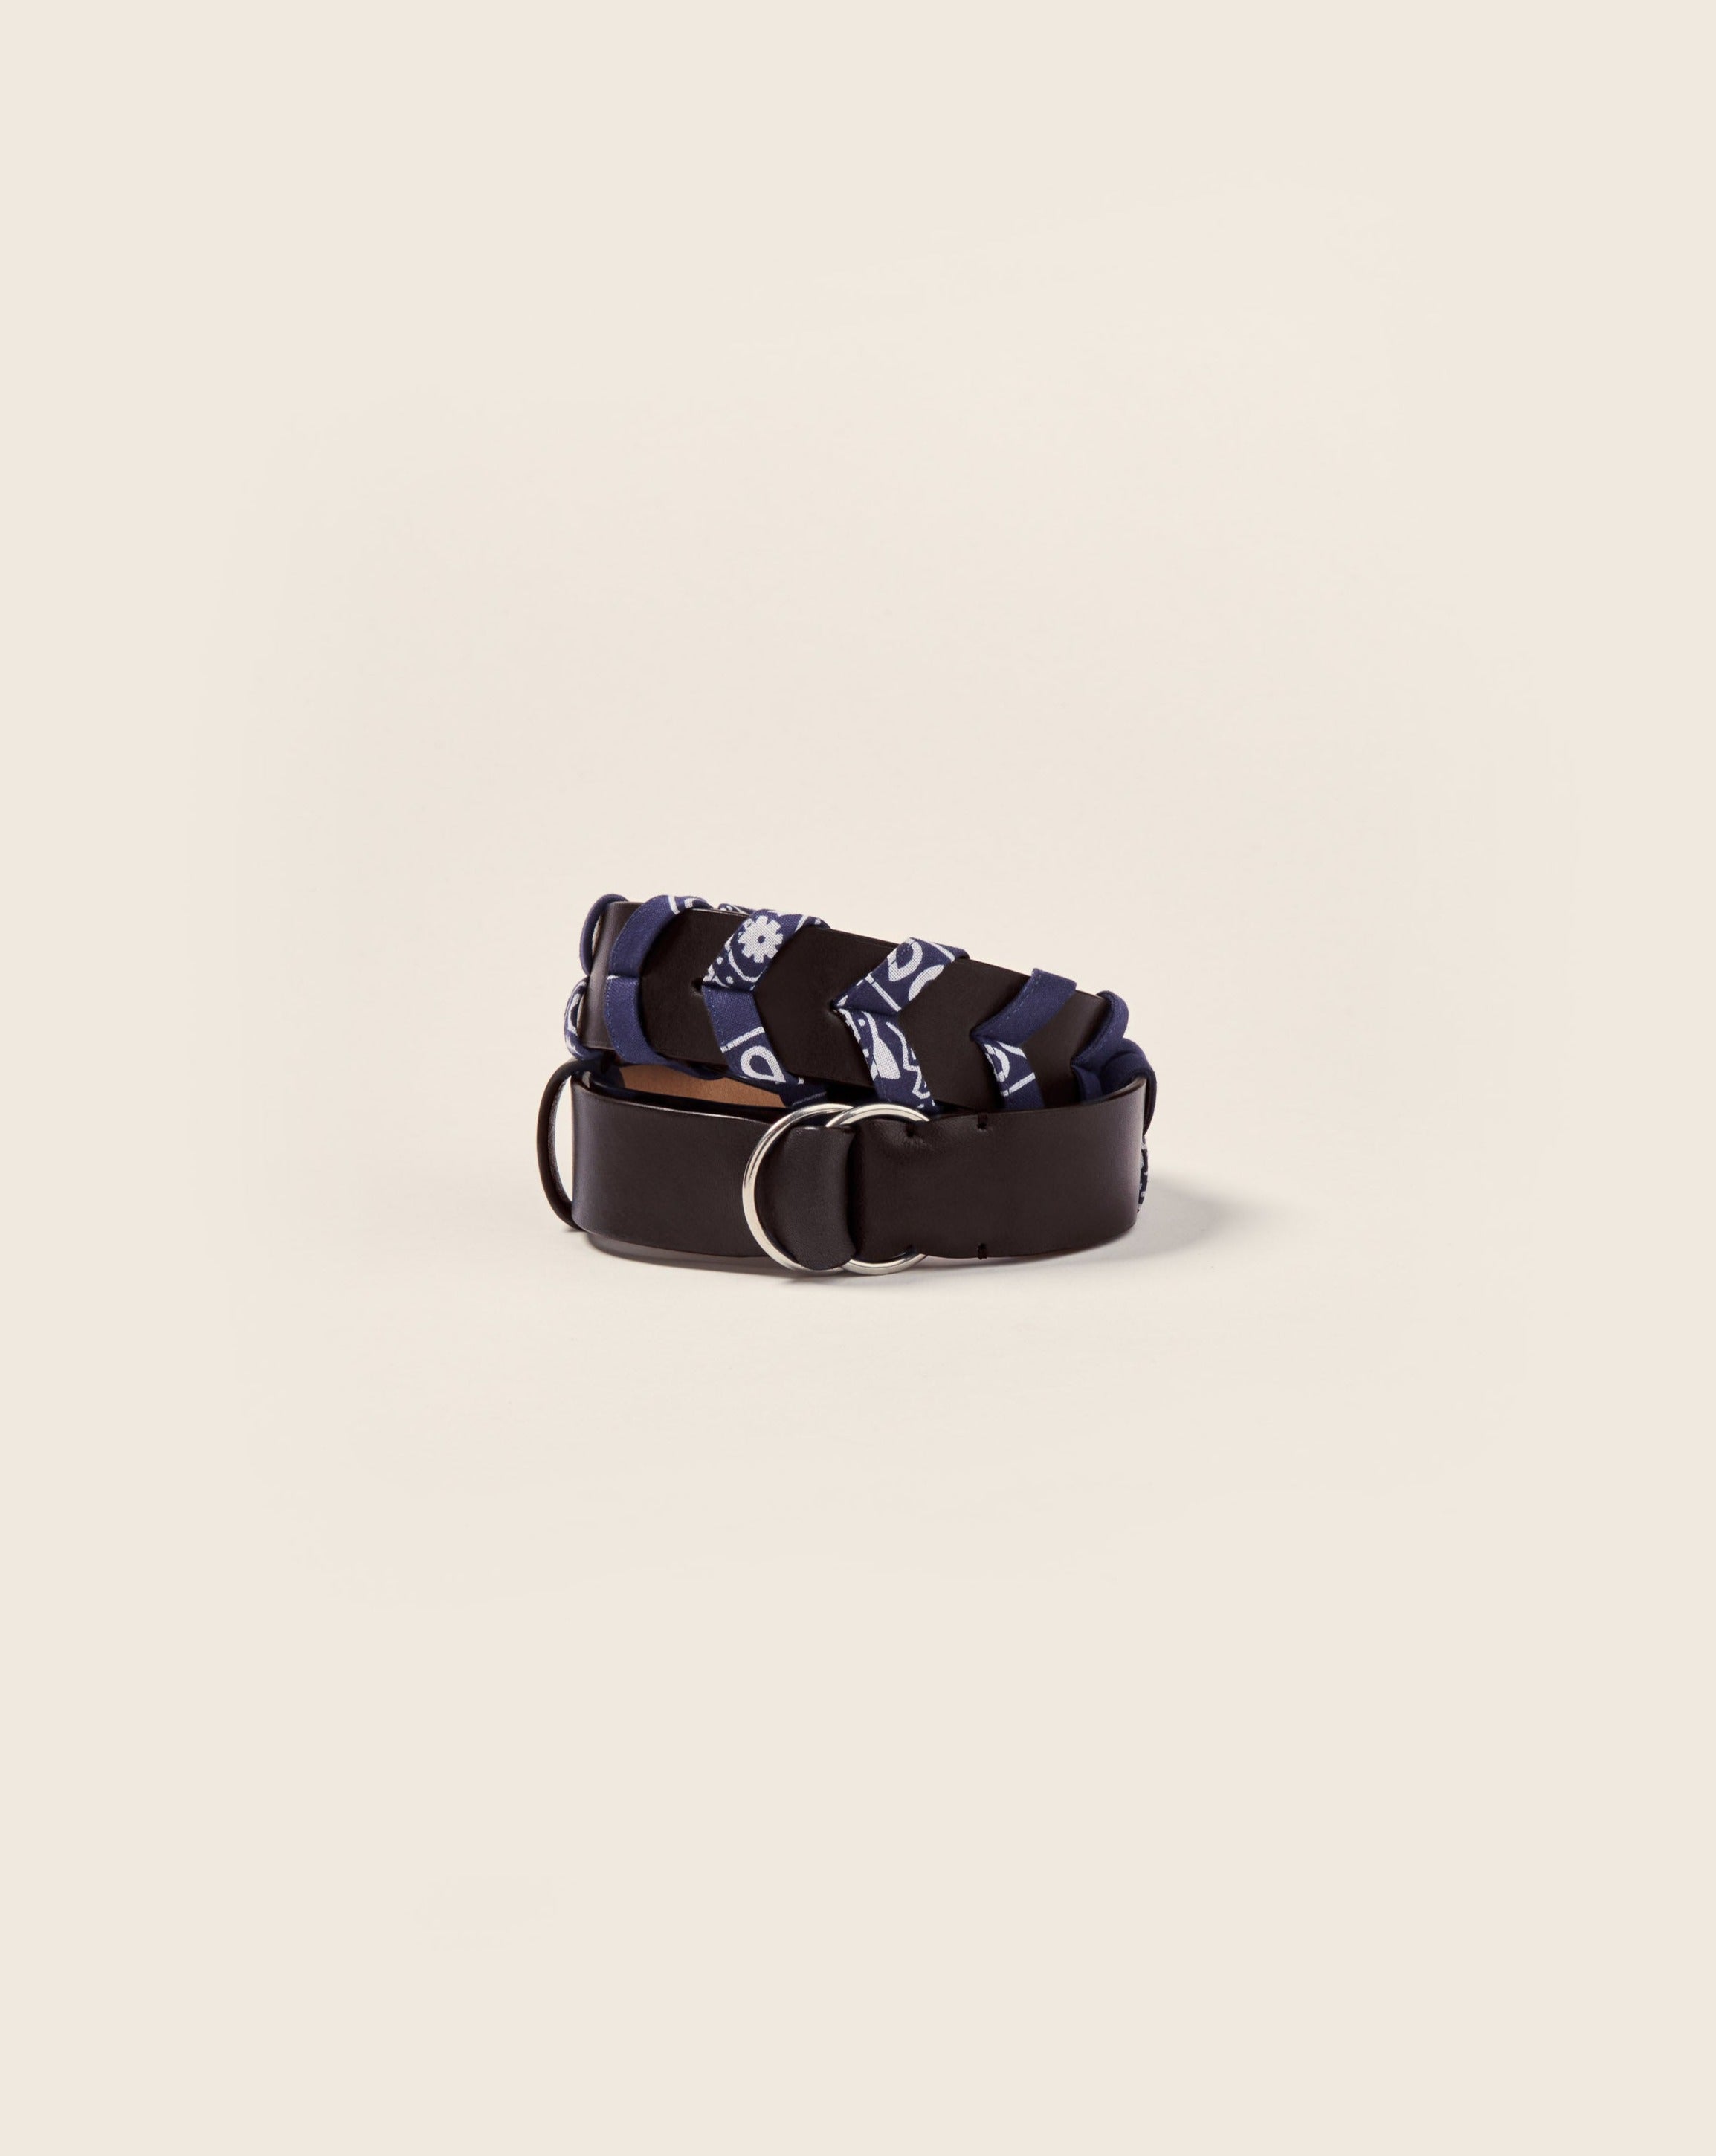 TANAGA - Belt - Black leather & navy bandana